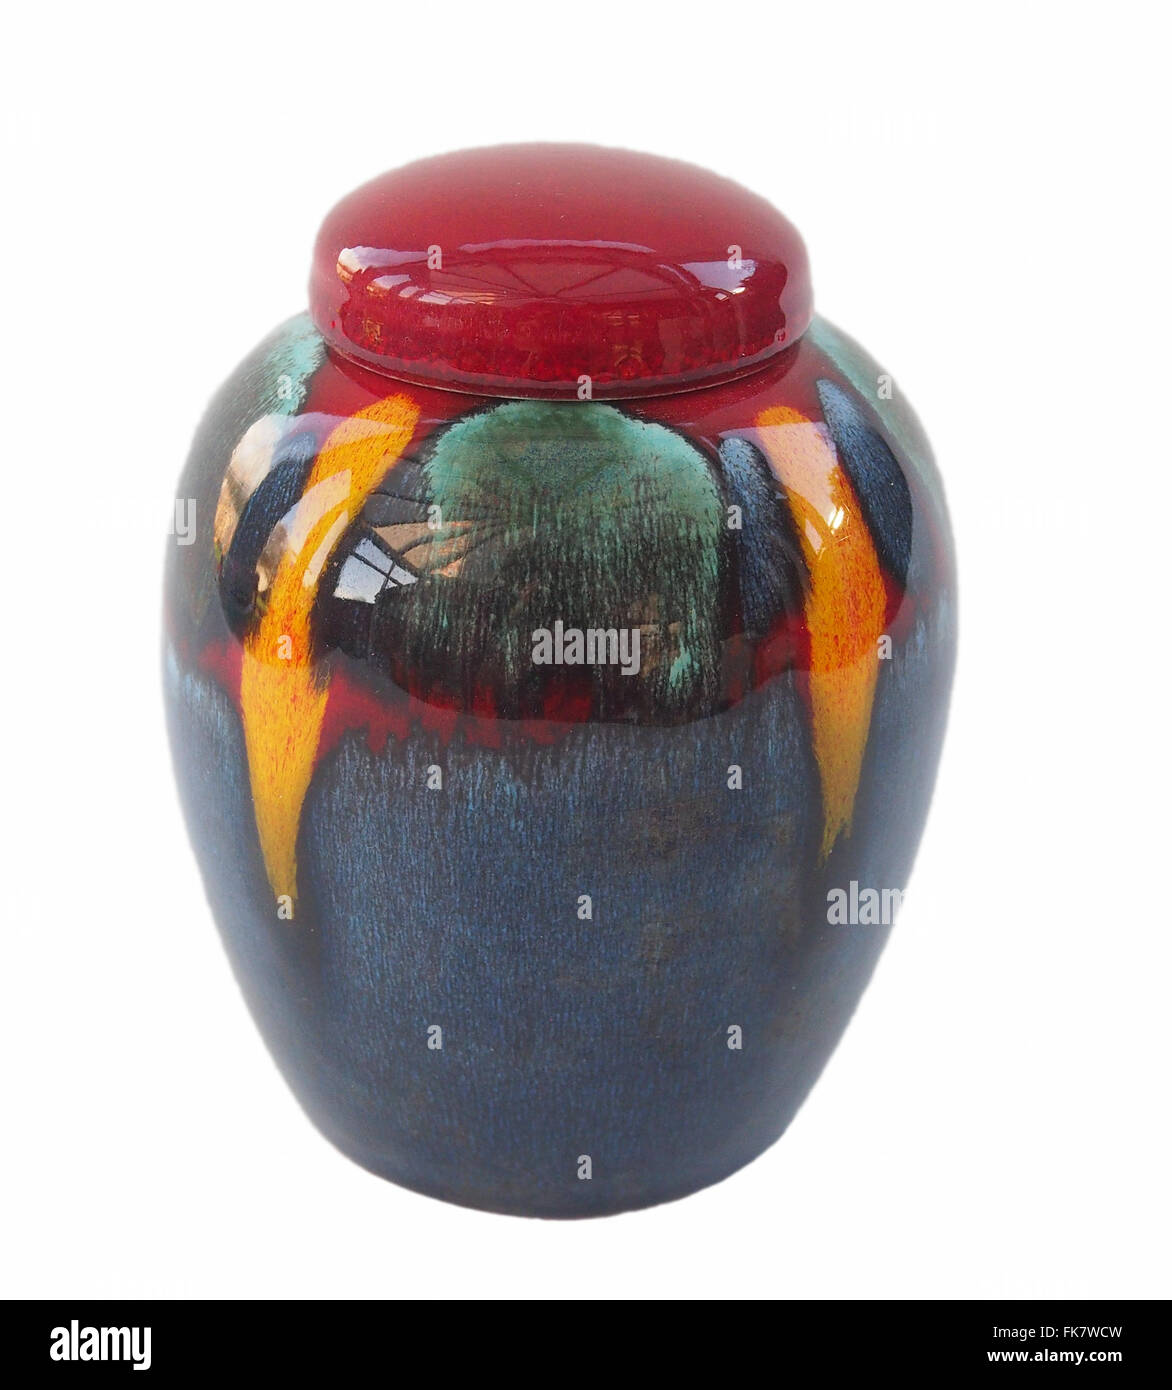 Poole pottery ginger jar dans le volcan finis design, studio shot isolé sur un fond blanc. Banque D'Images